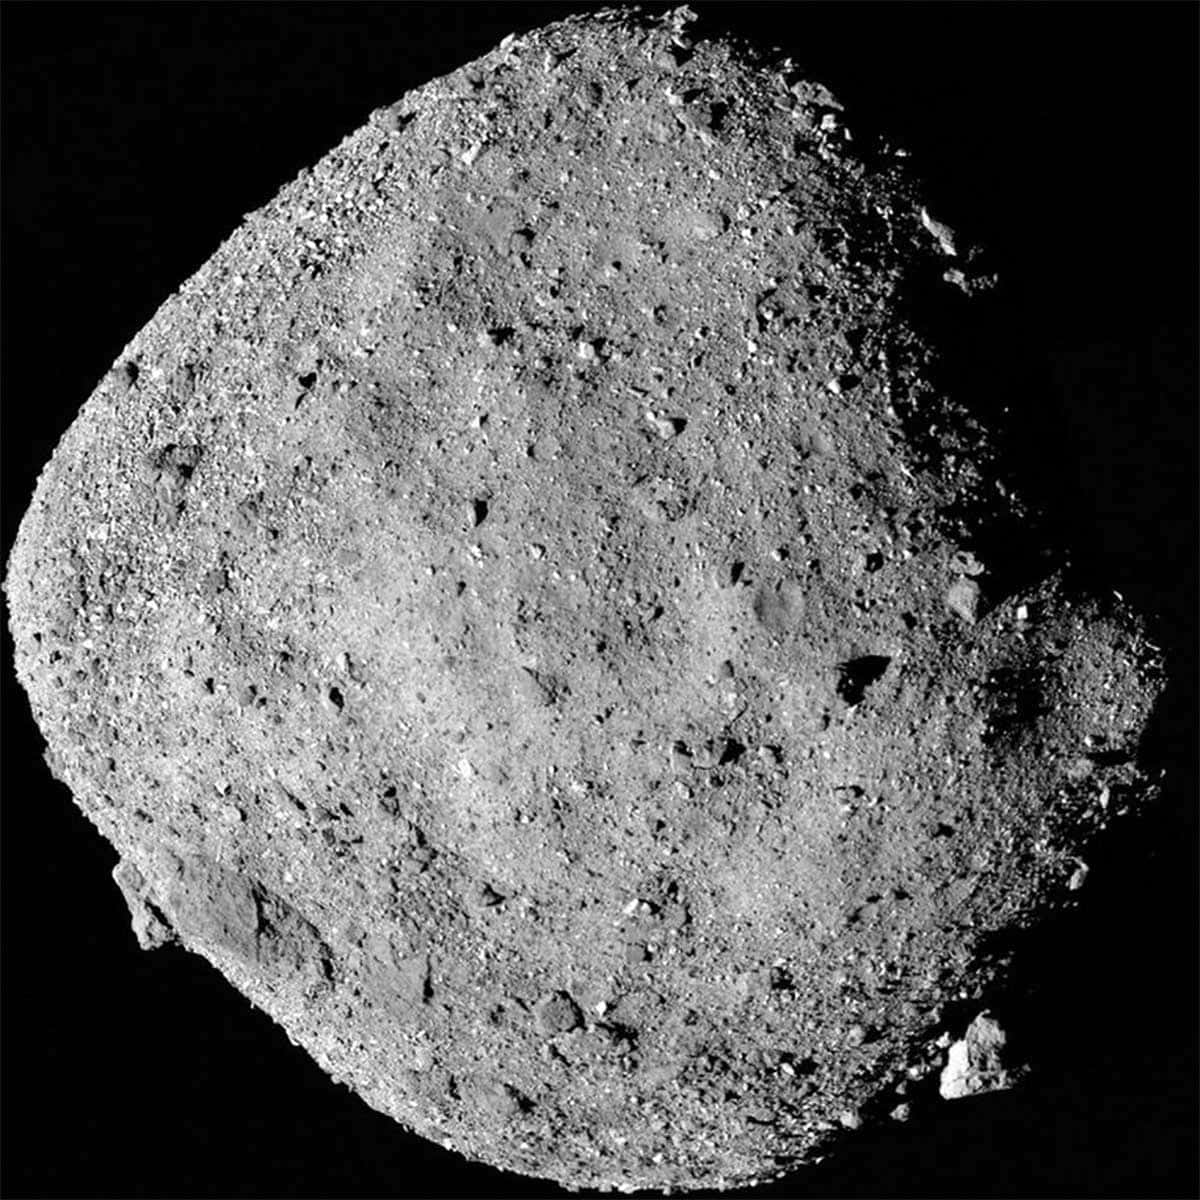 Bennu est une photo de l'astéroïde Bennu. 2 décembre 2018.